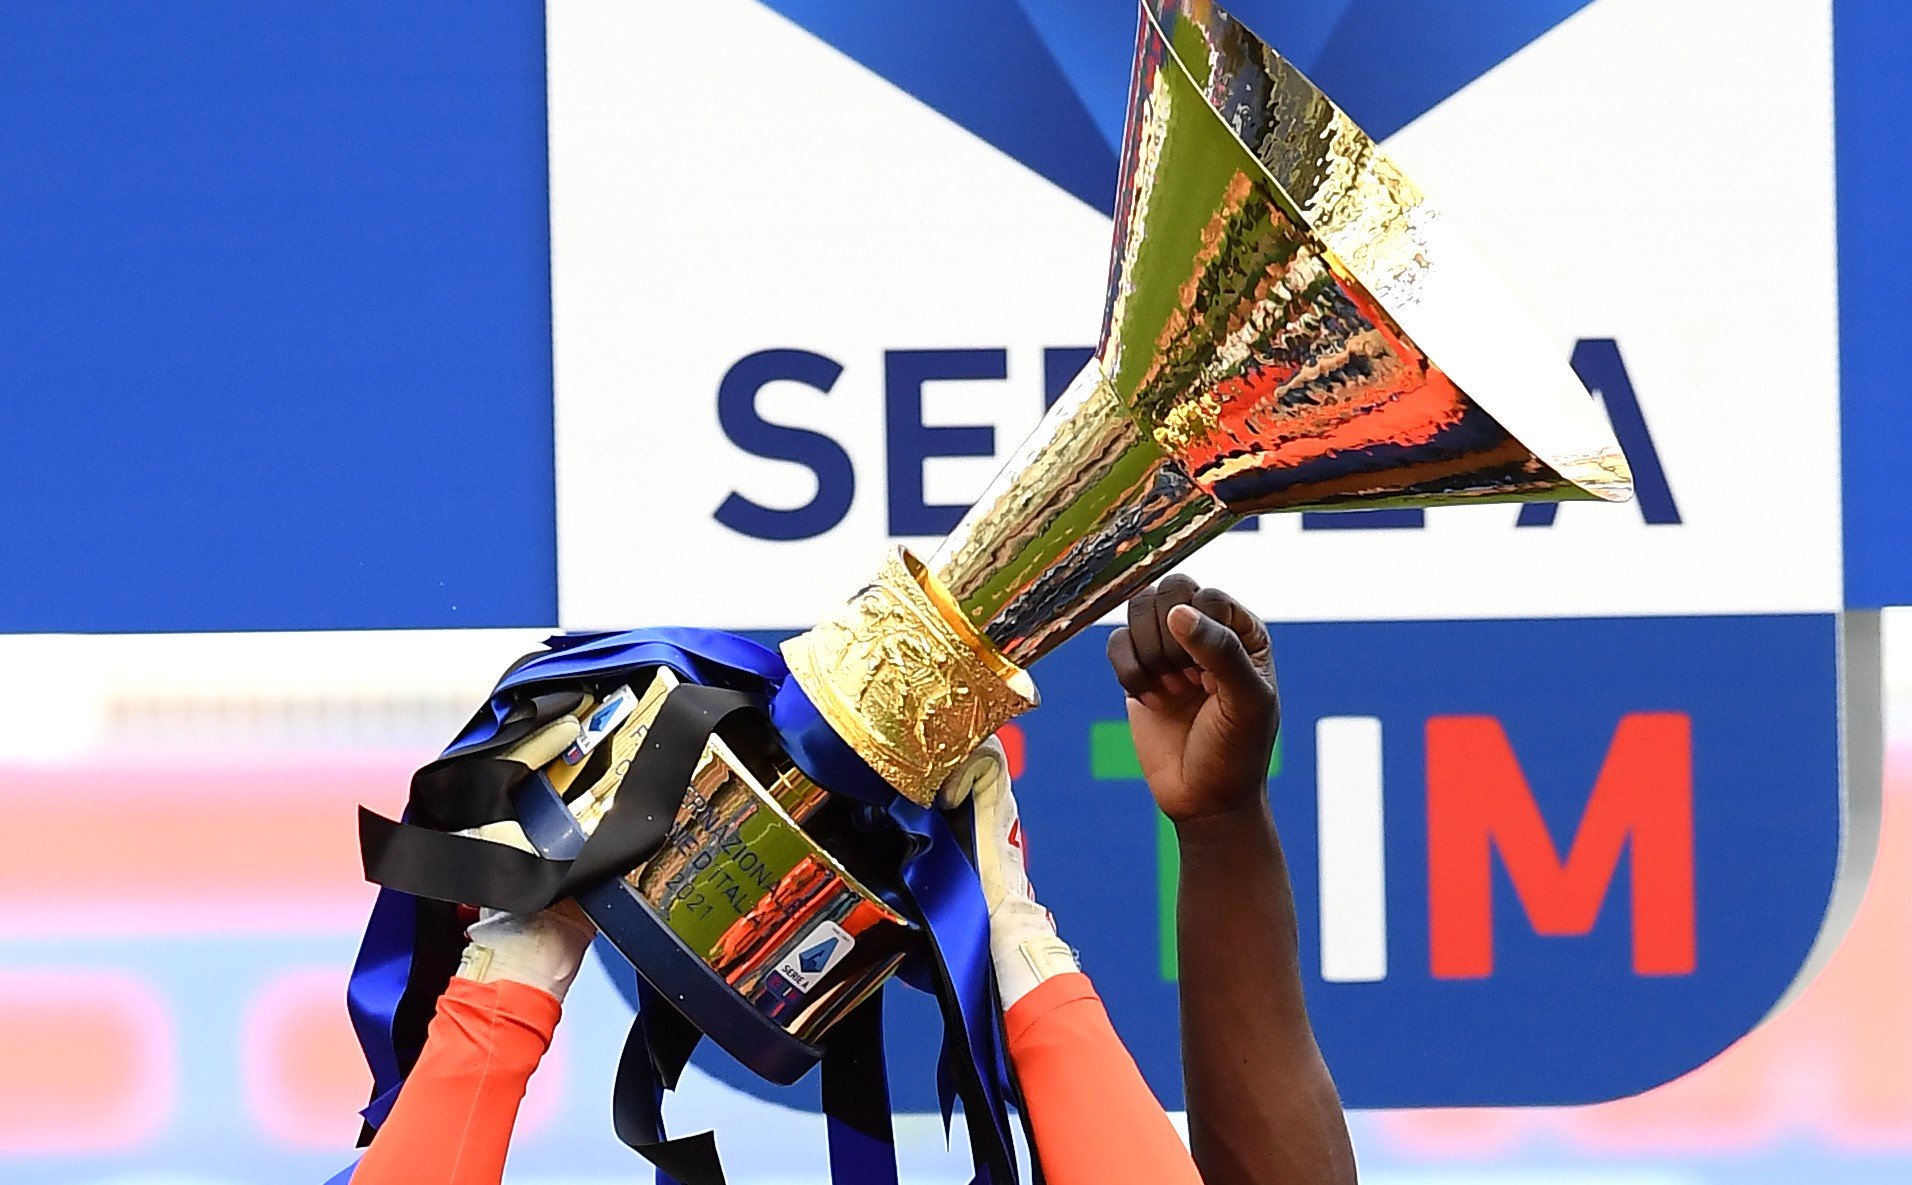 Ecco come la Lega festeggerà scudetto Milan o Inter, dove vederlo in tv |  Sport e Vai